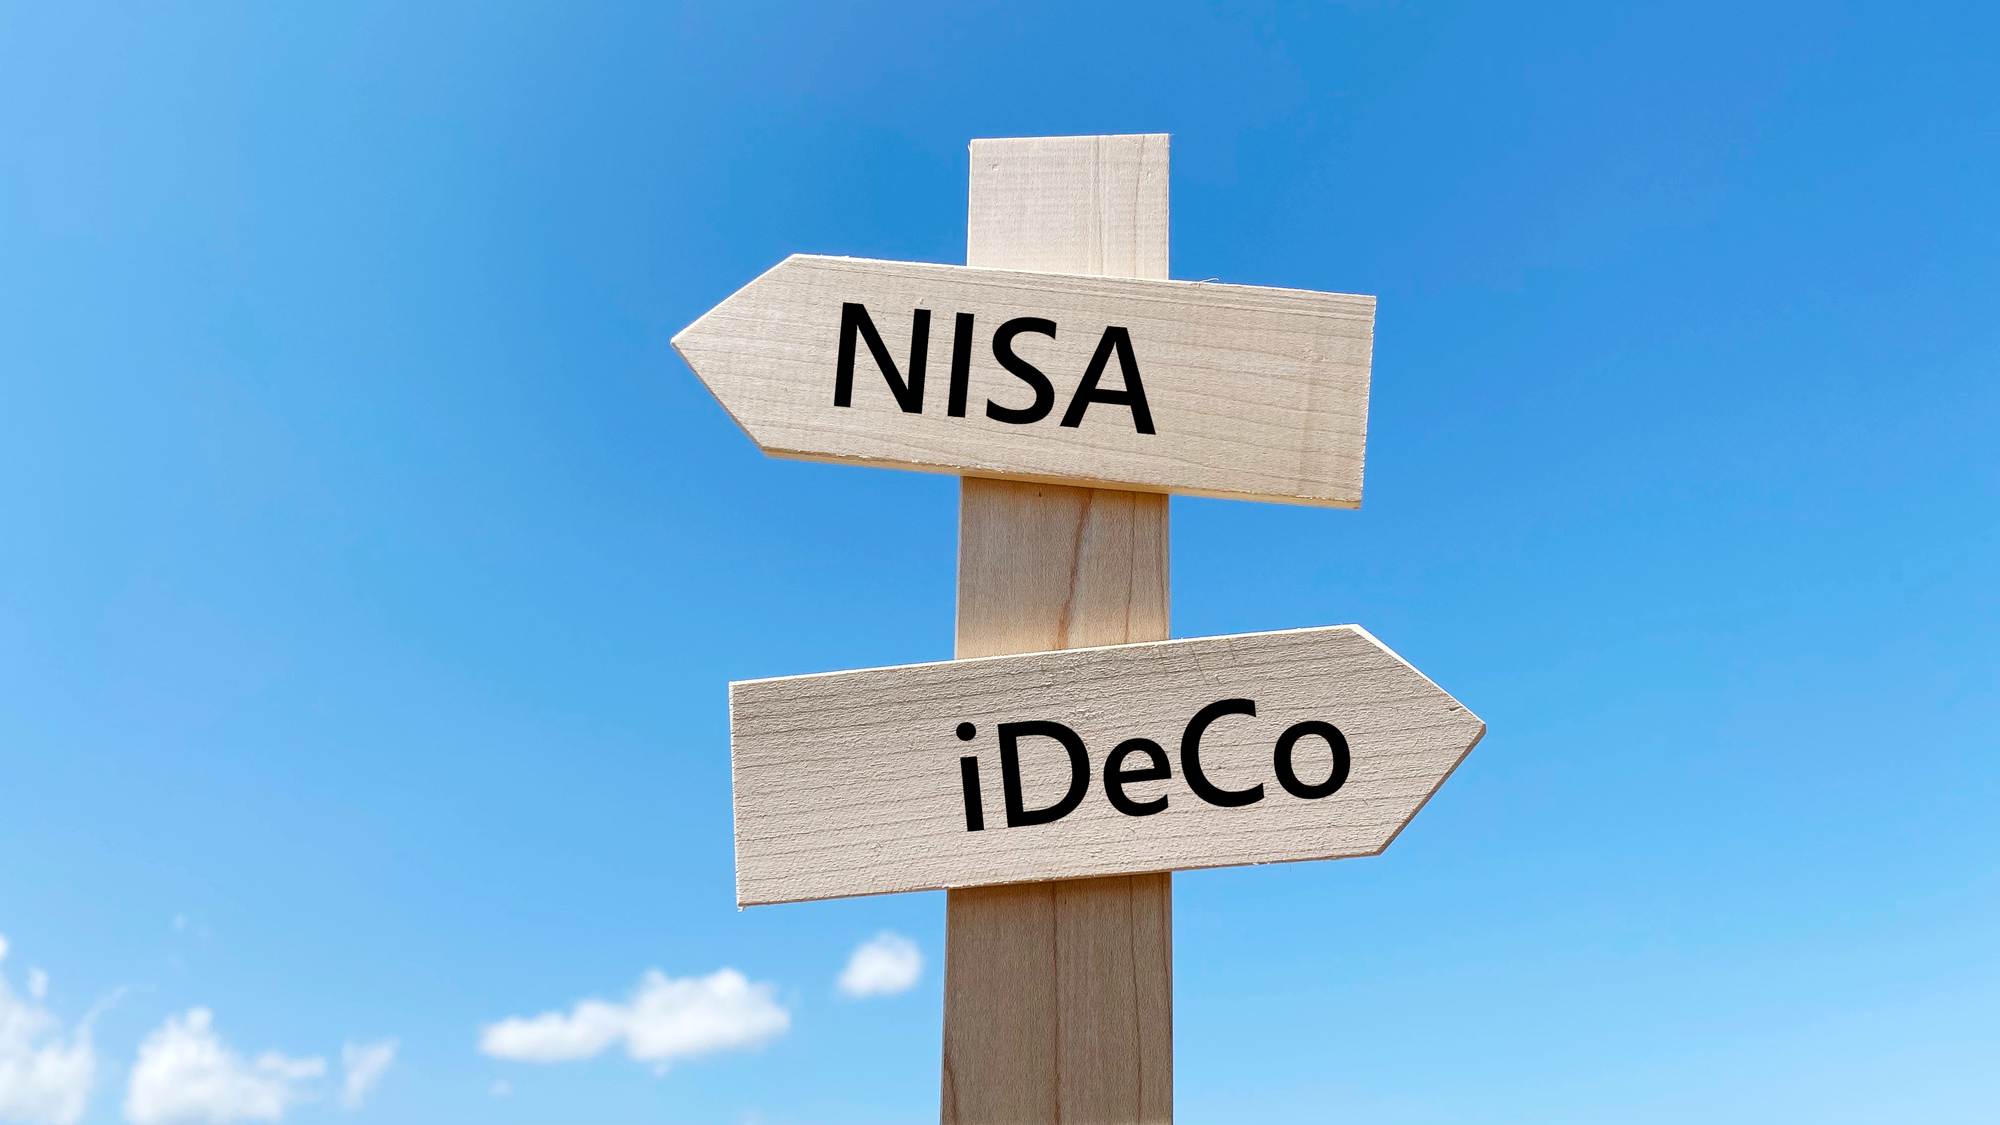 「iDeCo」と「NISA」はできれば両方使う